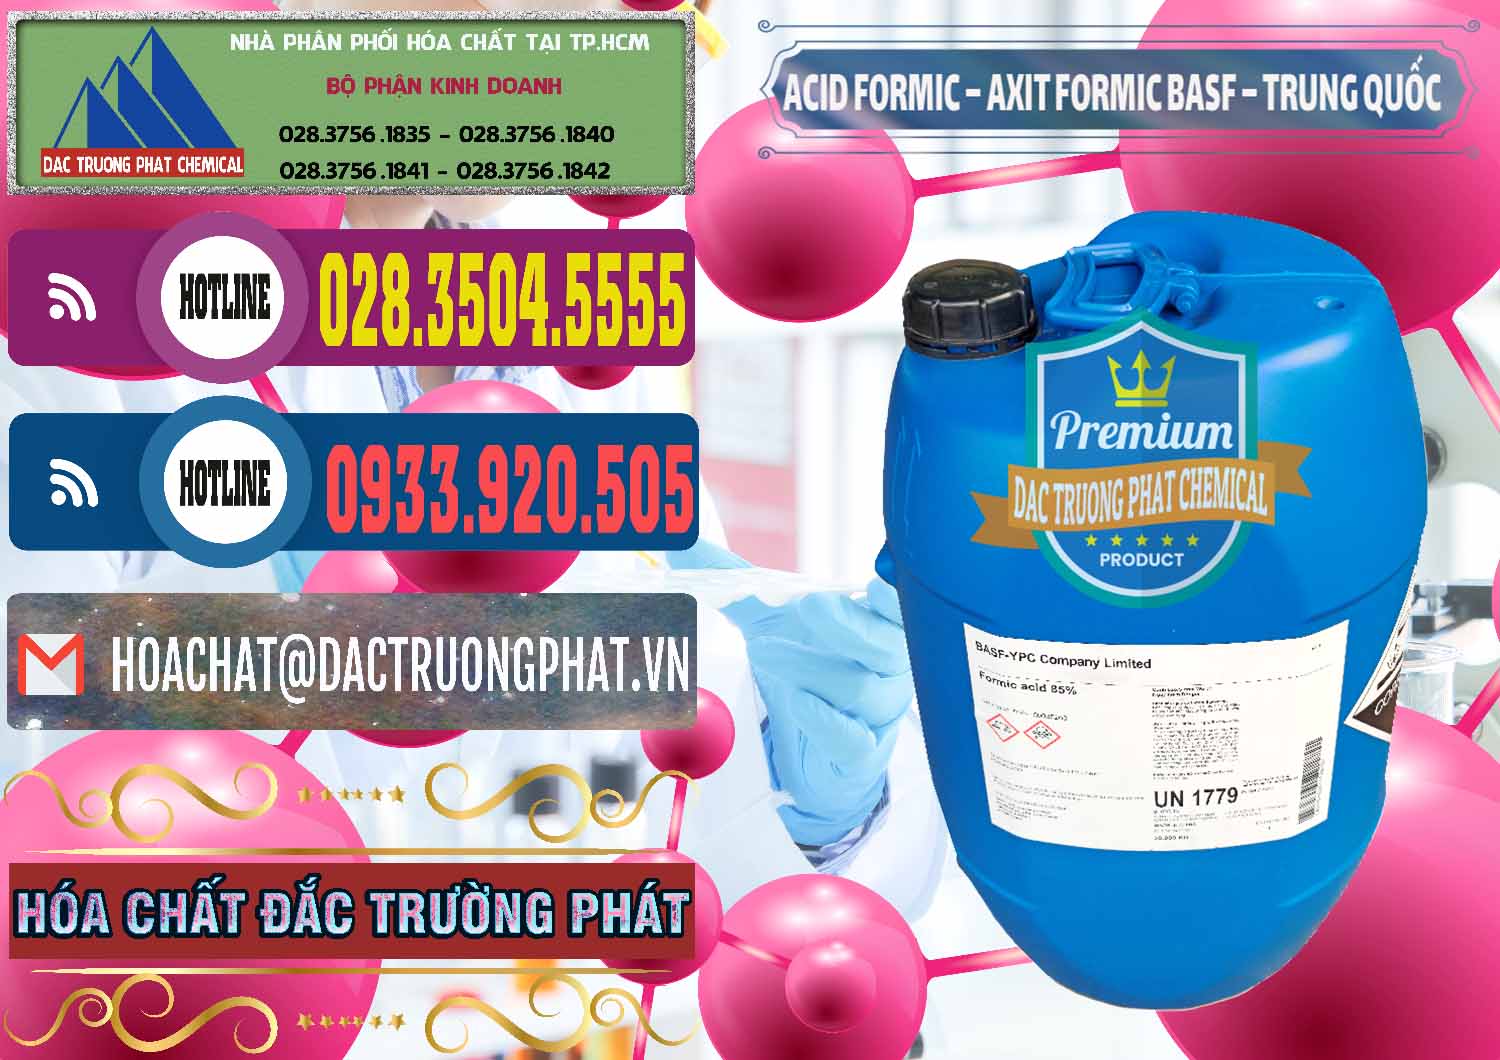 Cty chuyên cung cấp & bán Acid Formic - Axit Formic BASF Trung Quốc China - 0025 - Đơn vị nhập khẩu _ phân phối hóa chất tại TP.HCM - muabanhoachat.com.vn